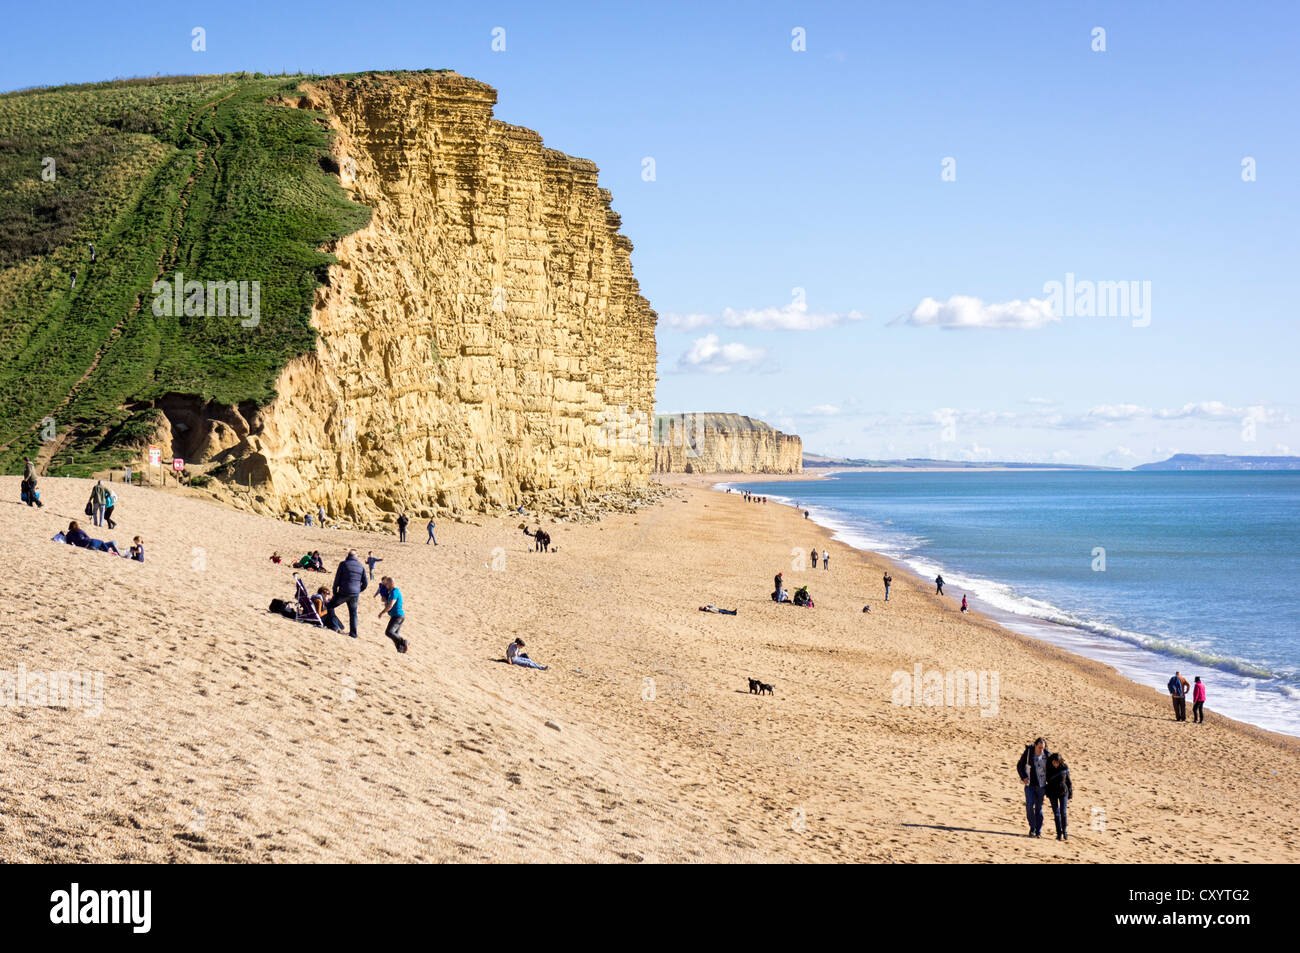 Avis de Dorset Coast - La plage de West Bay, sur la côte jurassique avec les gens sur la plage, UK Banque D'Images